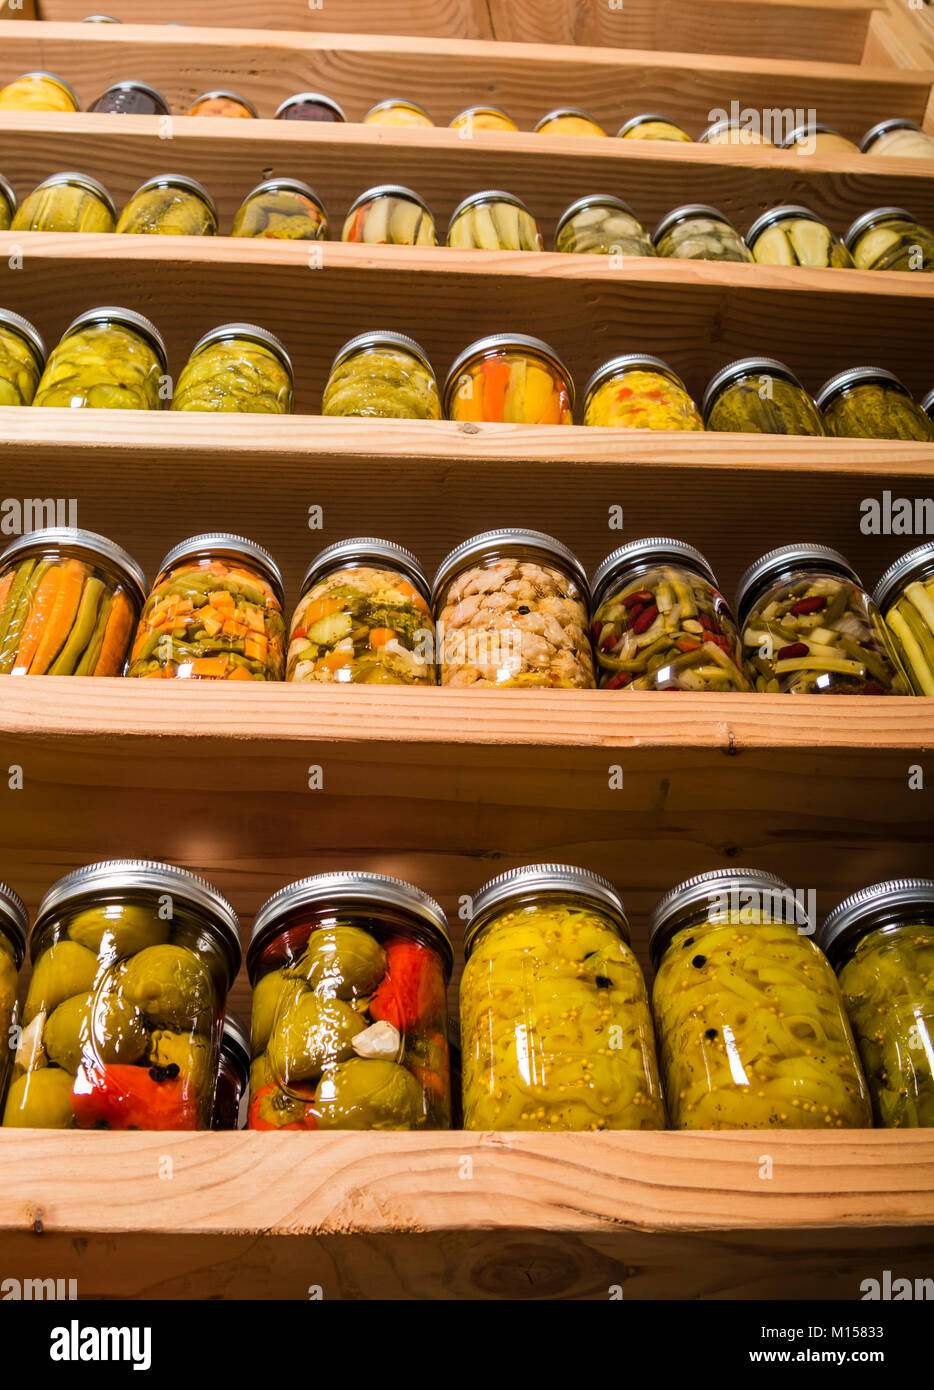 Accueil bocaux de conserves de fruits et légumes sur des étagères en bois Banque D'Images